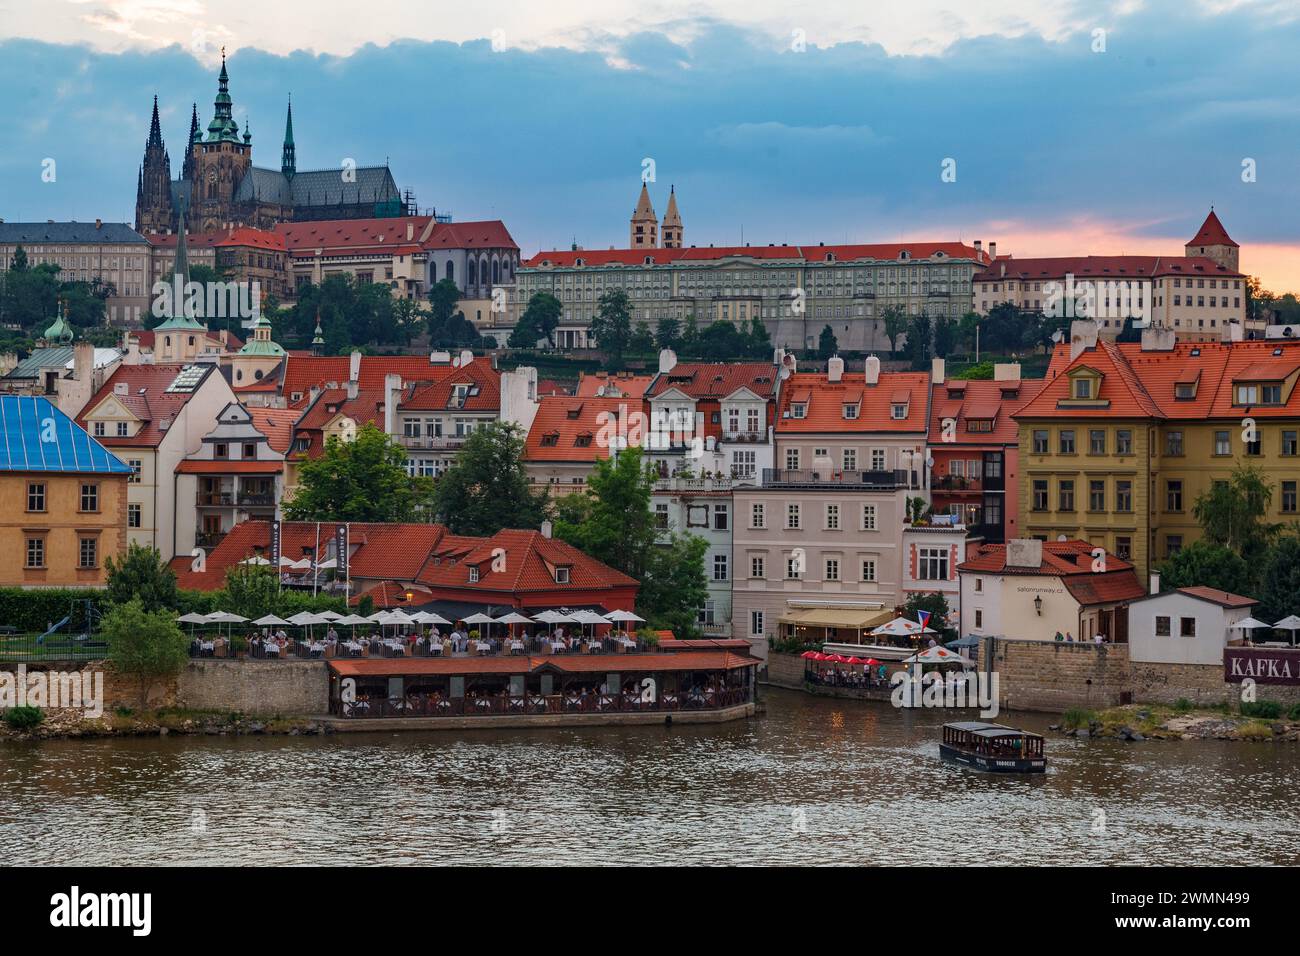 Der Veitsdom und die historischen Gebäude von Prag am Ufer des Vitava-Flusses Tschechien Stockfoto